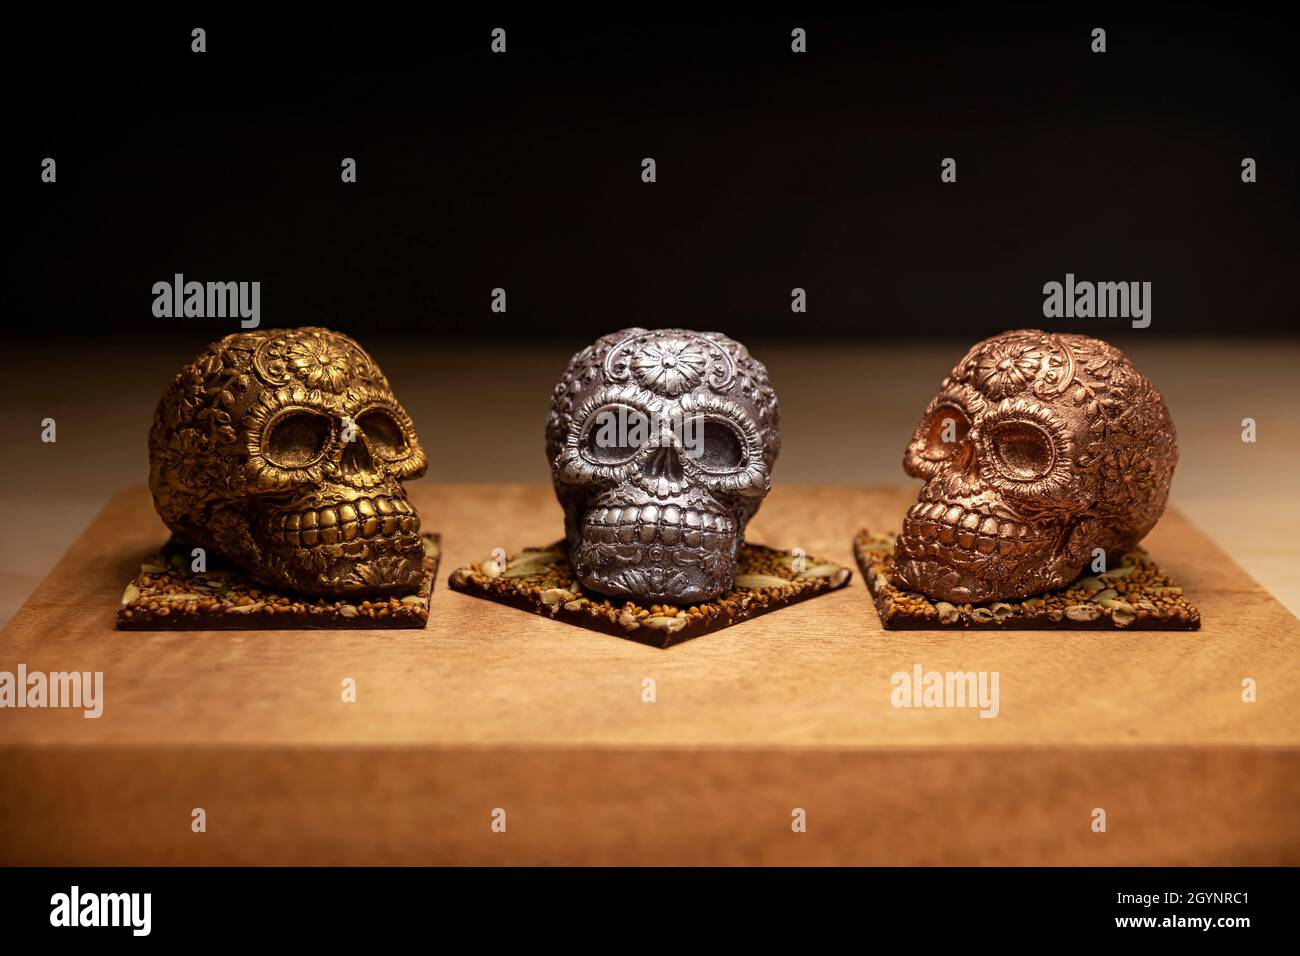 Genießbarer, ornamentierter mexikanischer Schädel aus Schokolade-Gourmet, traditionelles Geschenk für den Tag der 'Dia de muertos' des Todes in der mexikanischen Kultur mit dem Namen 'calaverita' Stockfoto